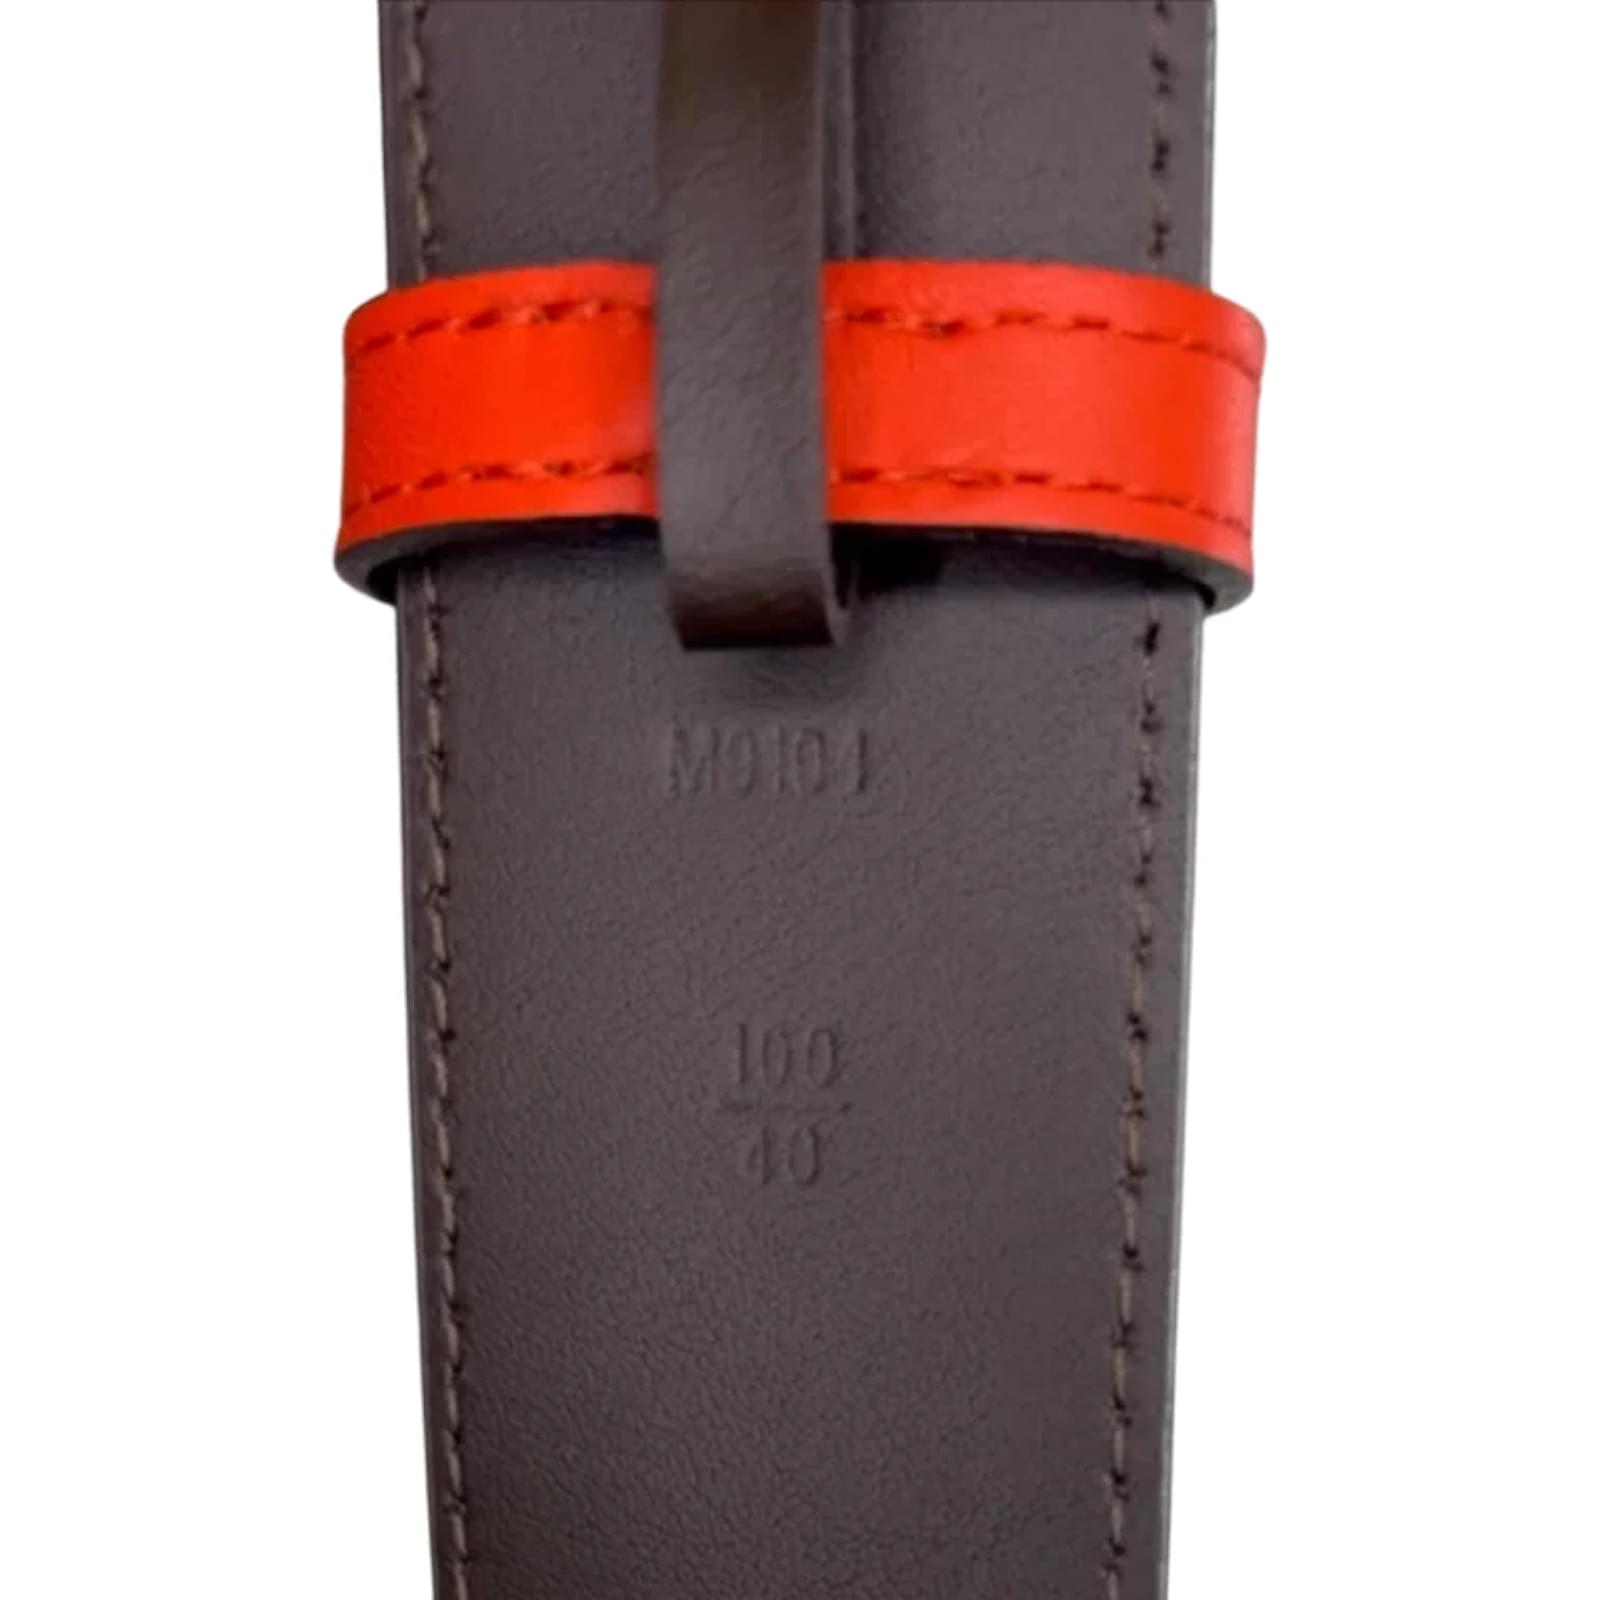 Cinturones de excelente de Calidad. 100% Piel. #louisvuitton